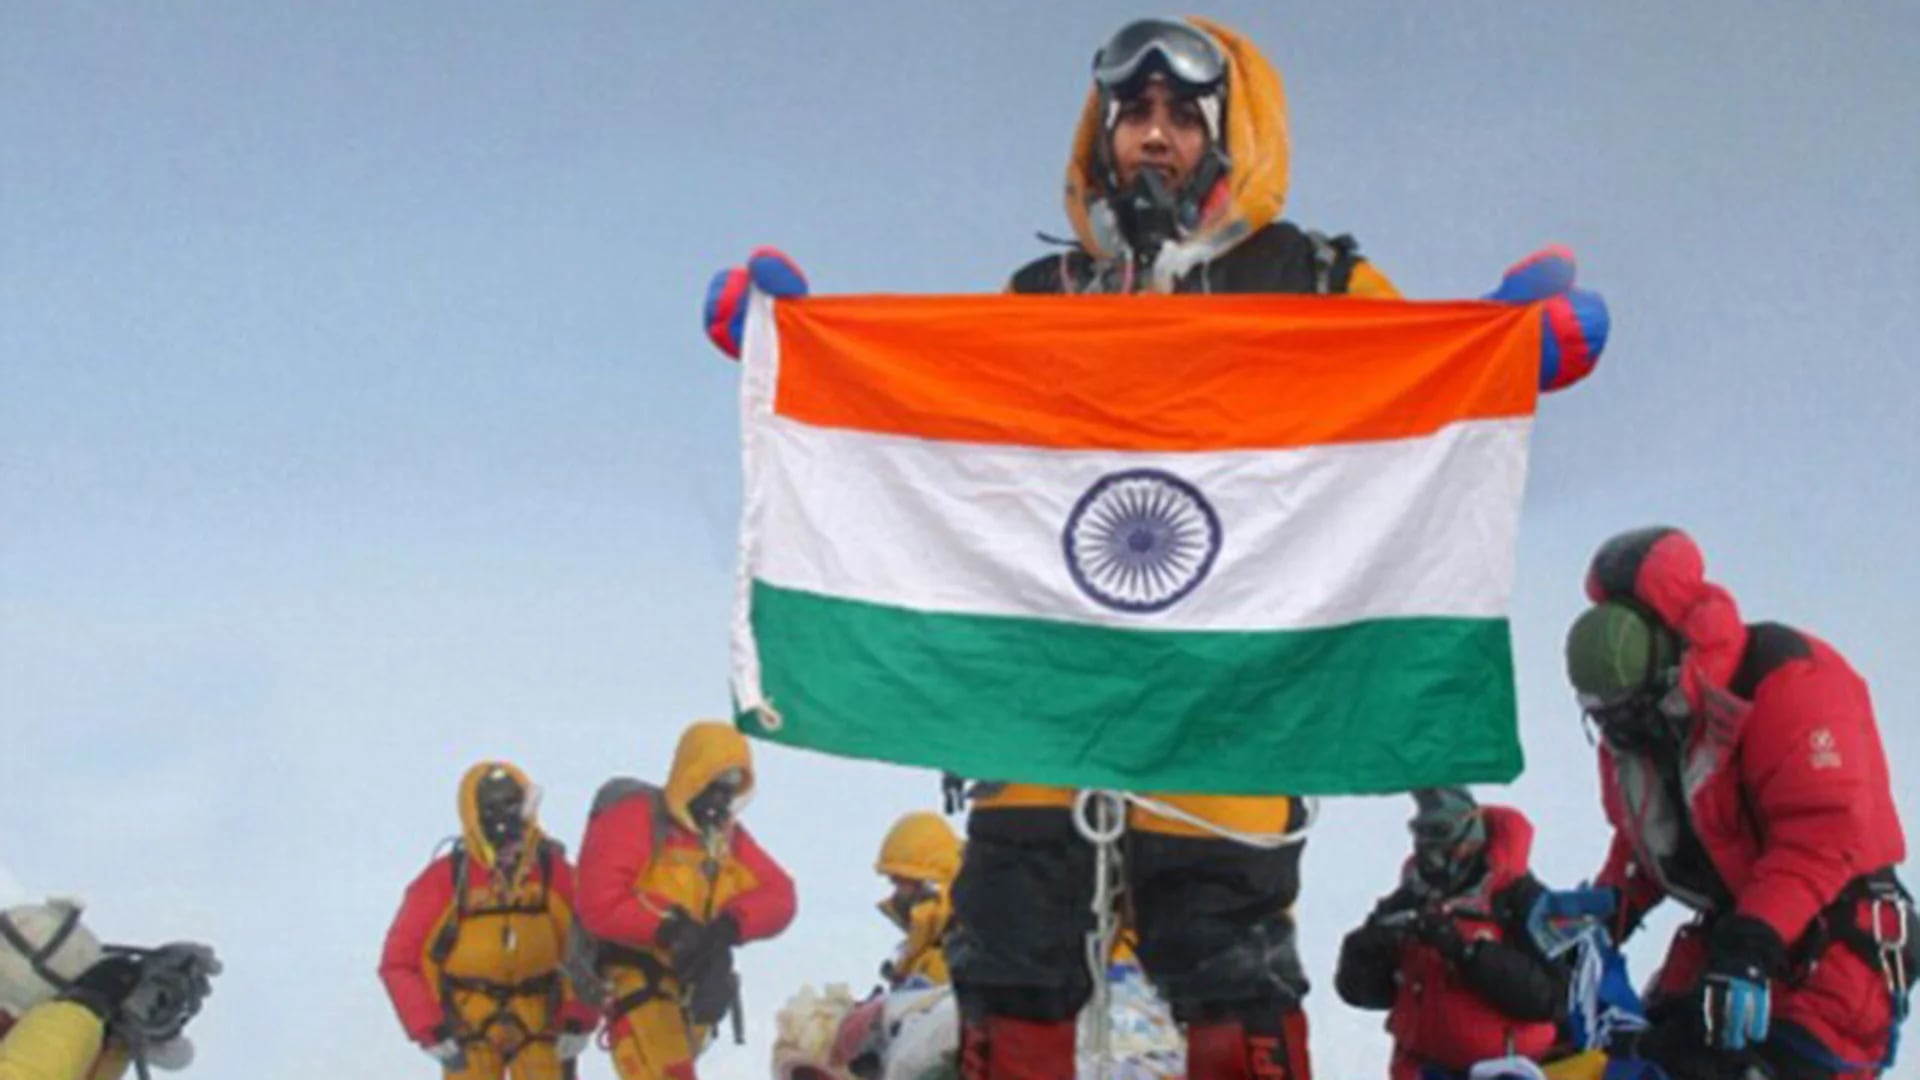 Muy similar a la escena capturada por Siddhanta, quien asegura haber hecho cumbre en el Everest y que sus fotos fueron “robadas” por los Rathod